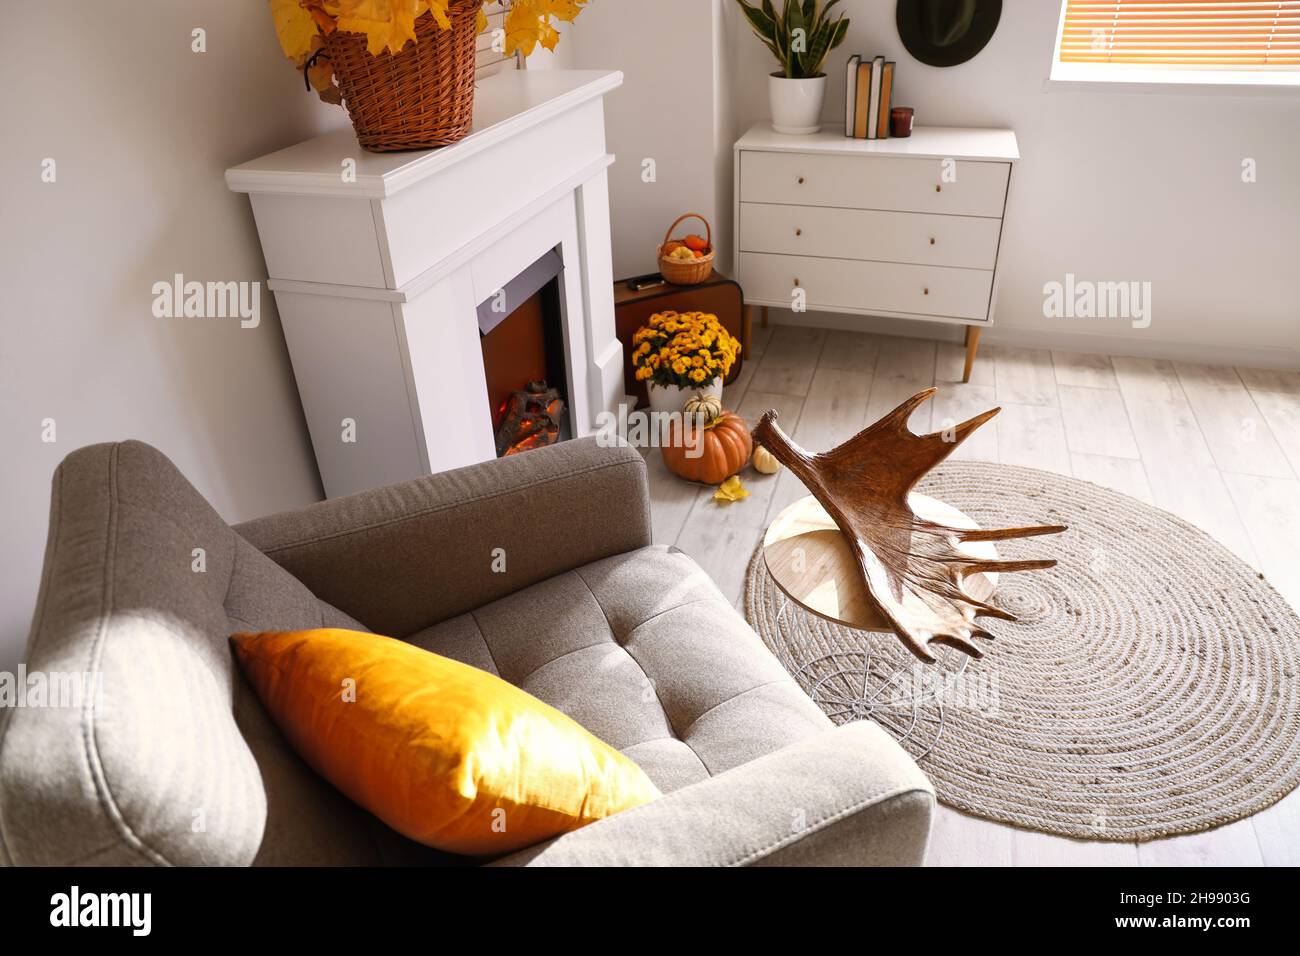 Habitación interior luminosa con chimenea moderna, sillón y cómoda Foto de stock